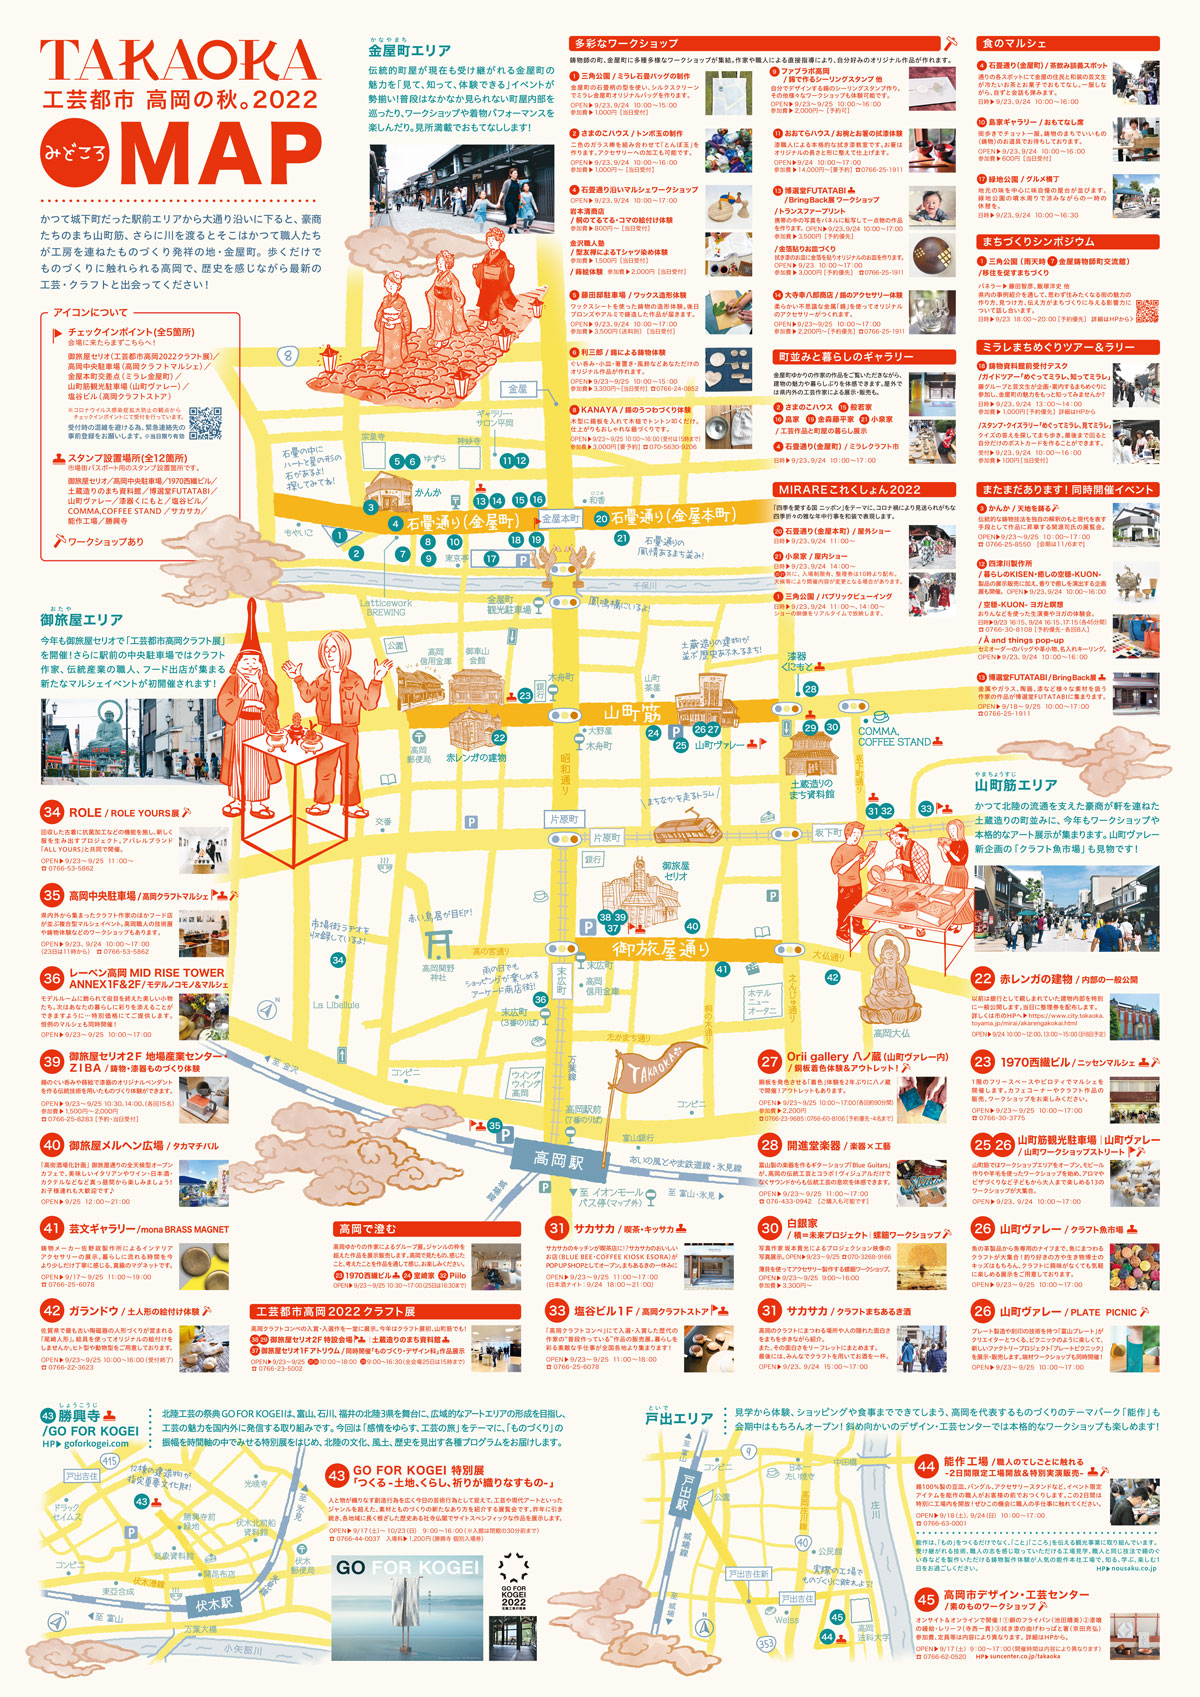 富山県高岡市で開催される「市場街 (いちばまち)」の会場マップ